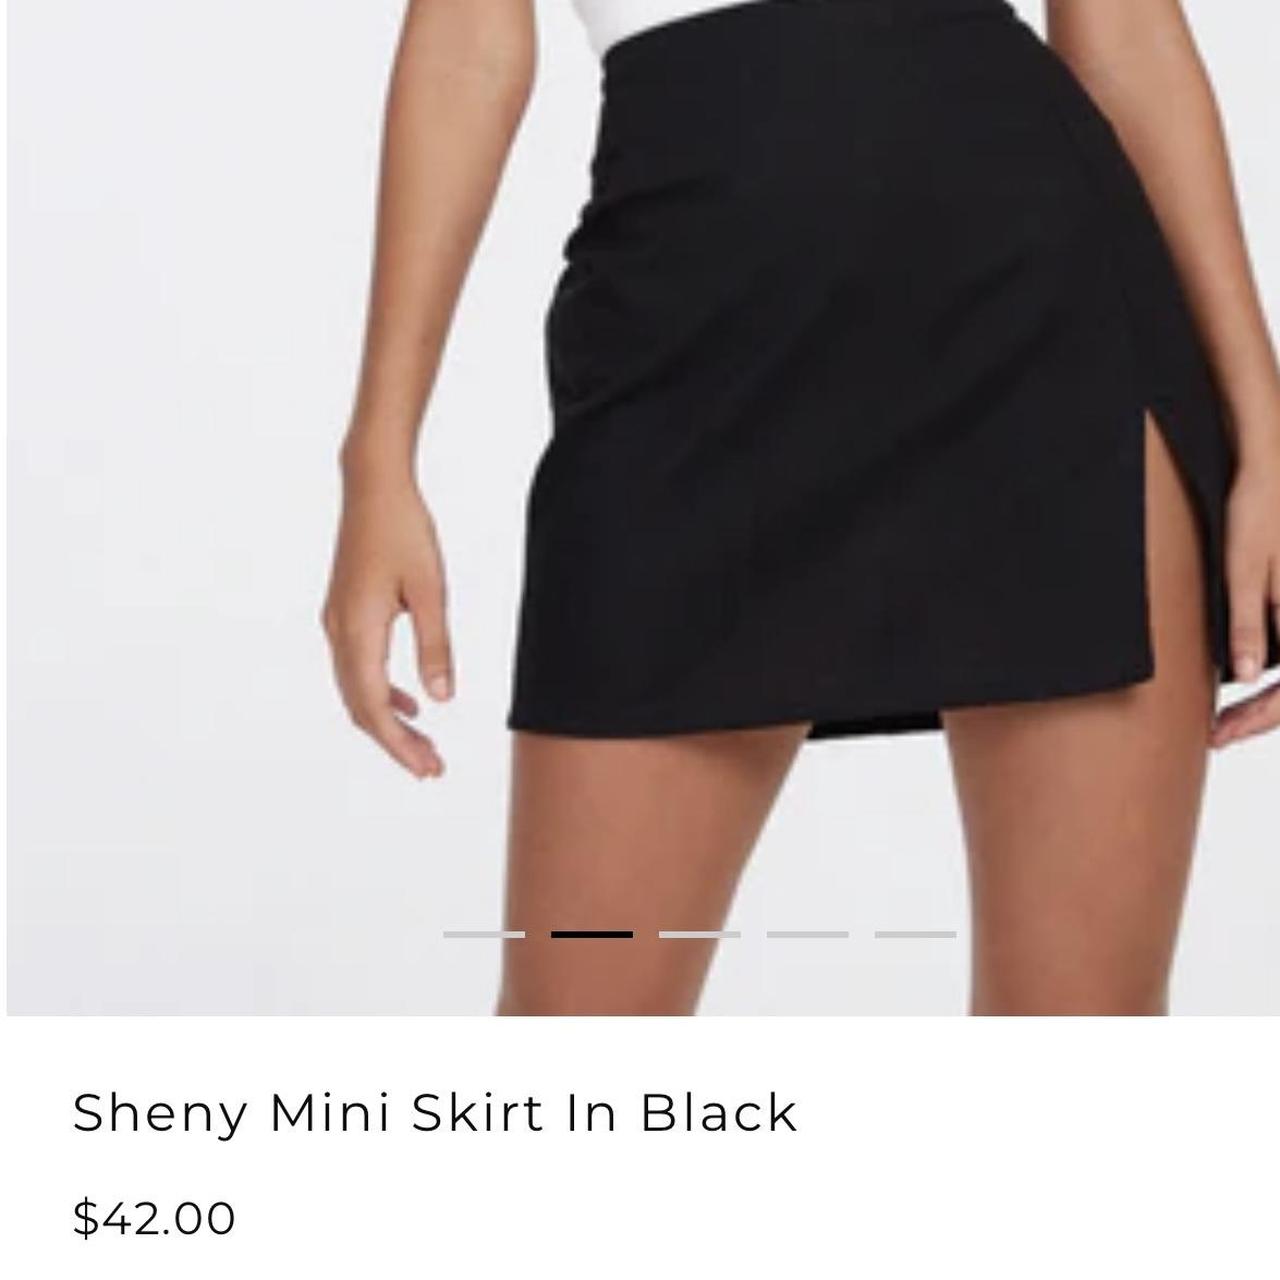 Sheny Mini Skirt in Black